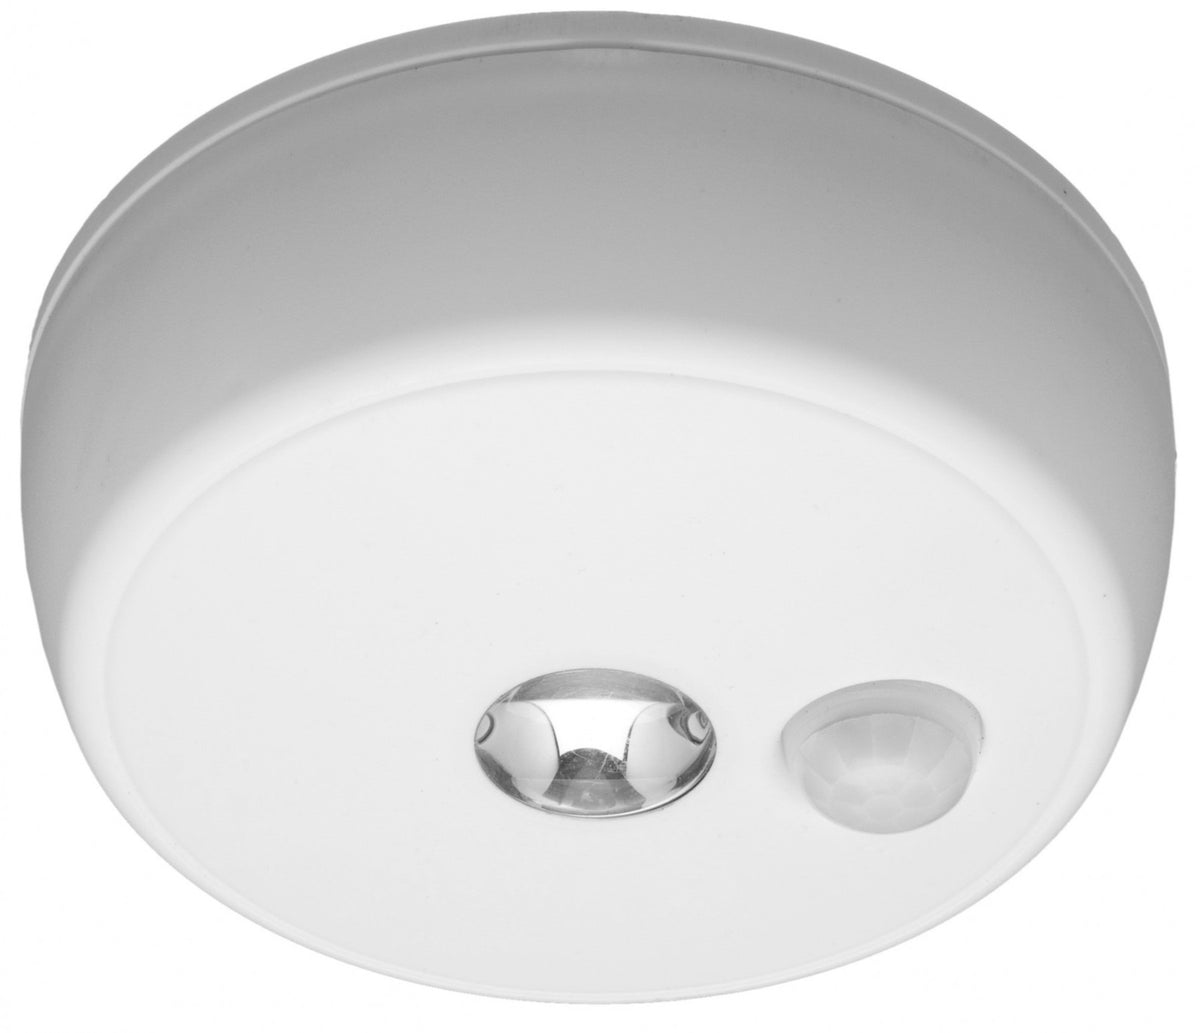 Mr Beams MB980 Motion Sensor LED Ceiling Light, White